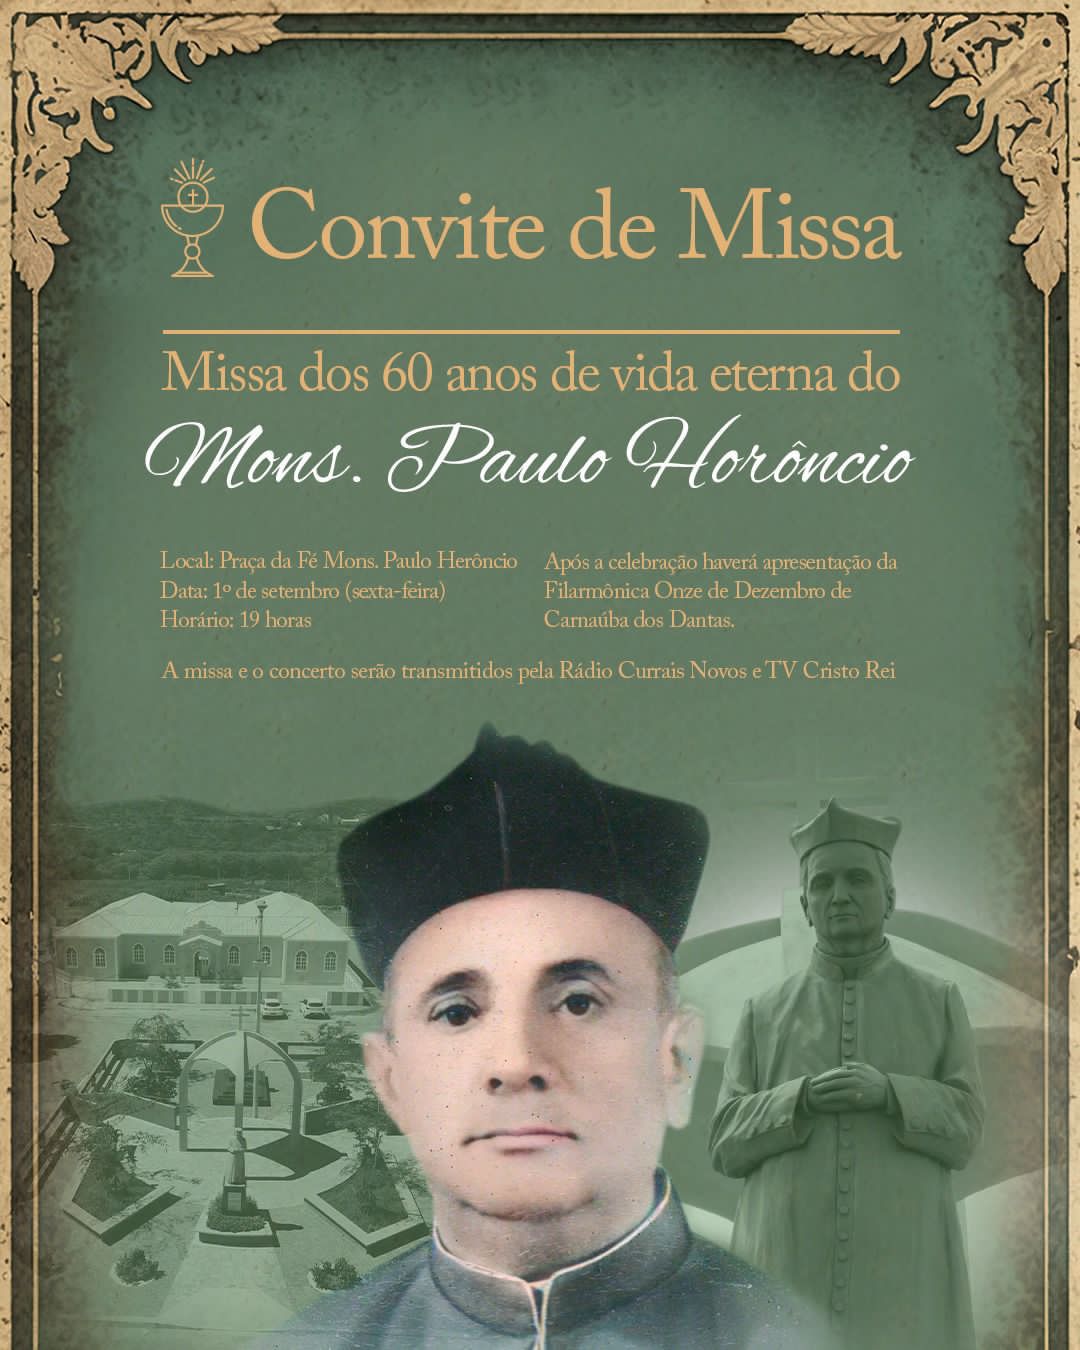 Currais Novos celebra com missa e apresentação de filarmônica os 60 anos de morte do Mons. Paulo Herôncio